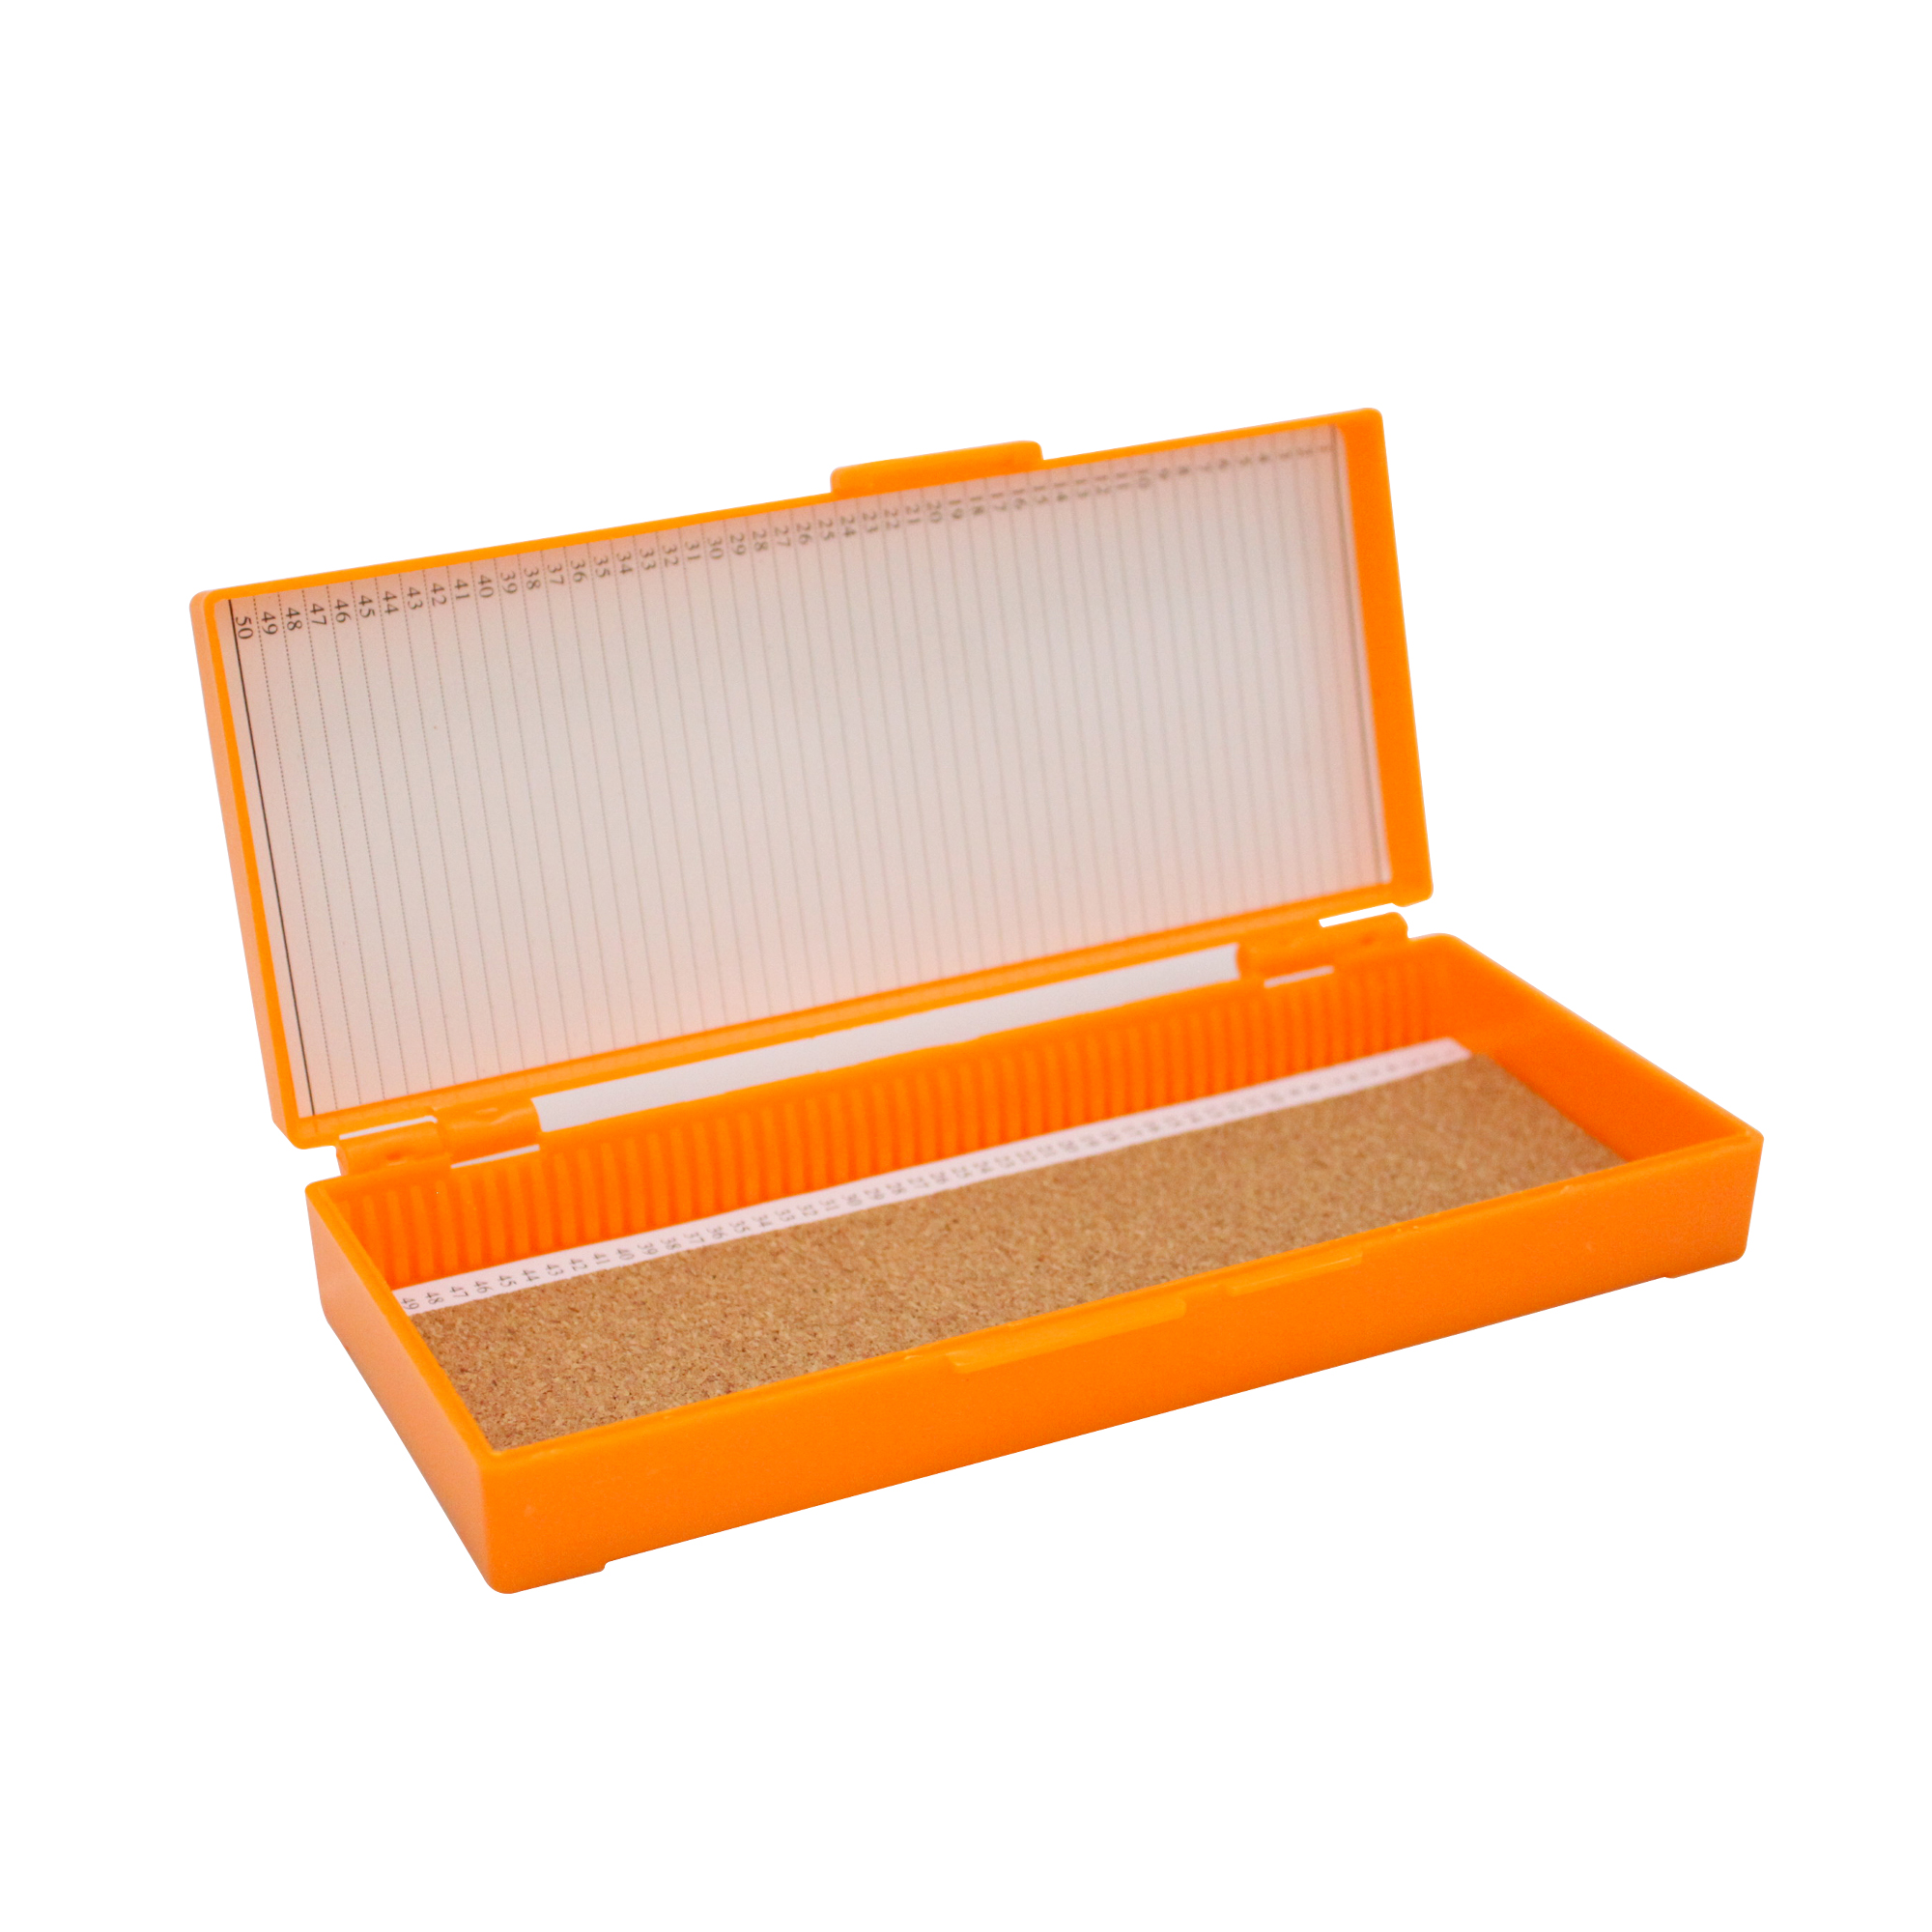 50片装载玻片存储盒,橘色